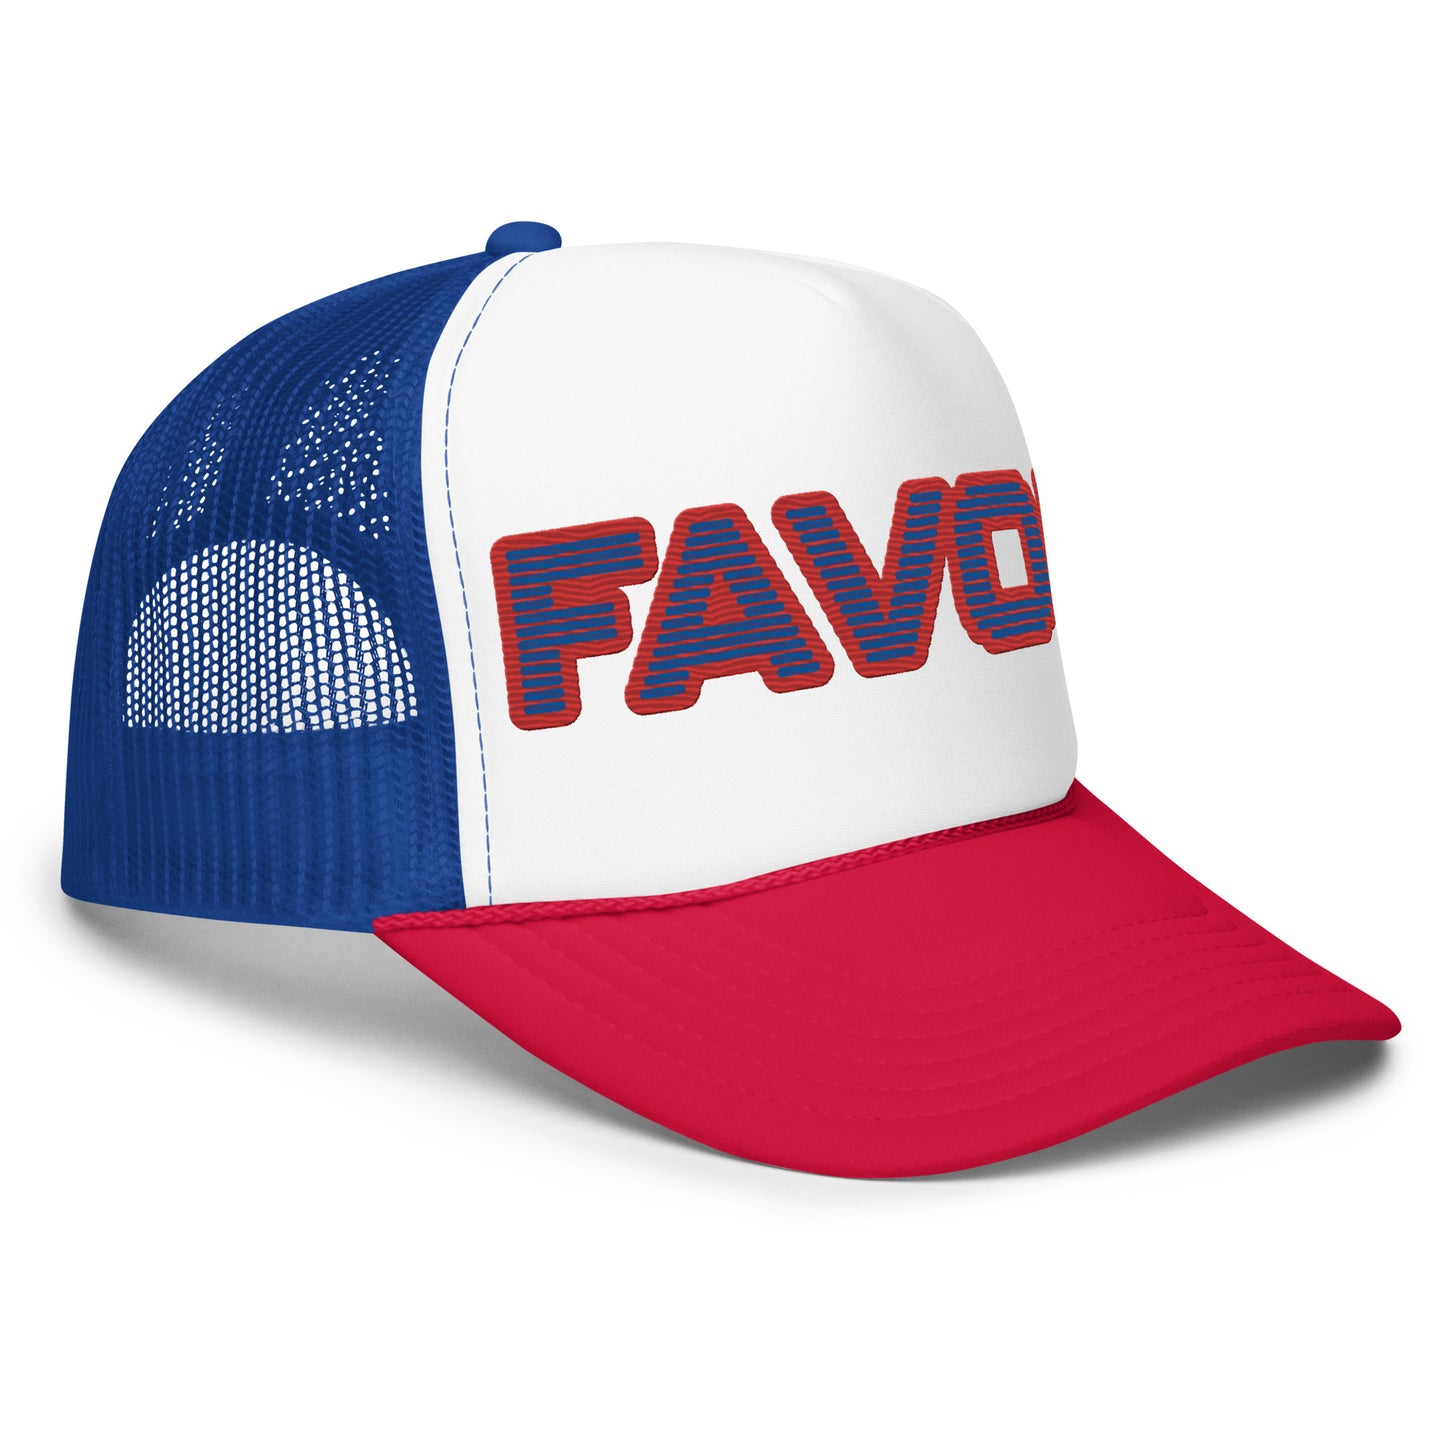 FAVOR- Foam trucker hat